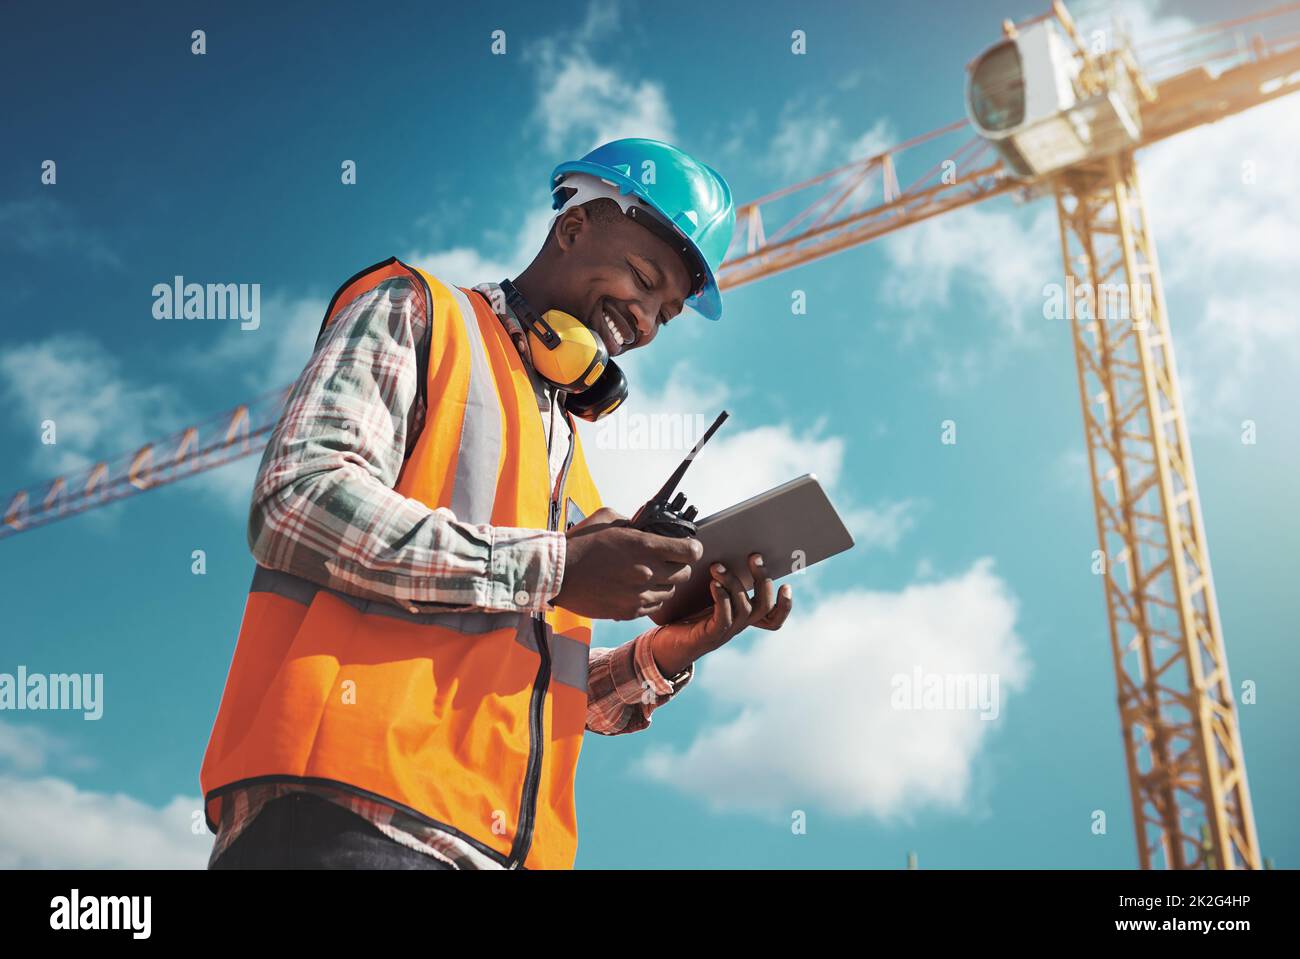 New Age Tech für New Age Konstruktion. Aufnahme eines jungen Mannes mit einem digitalen Tablet während der Arbeit auf einer Baustelle. Stockfoto